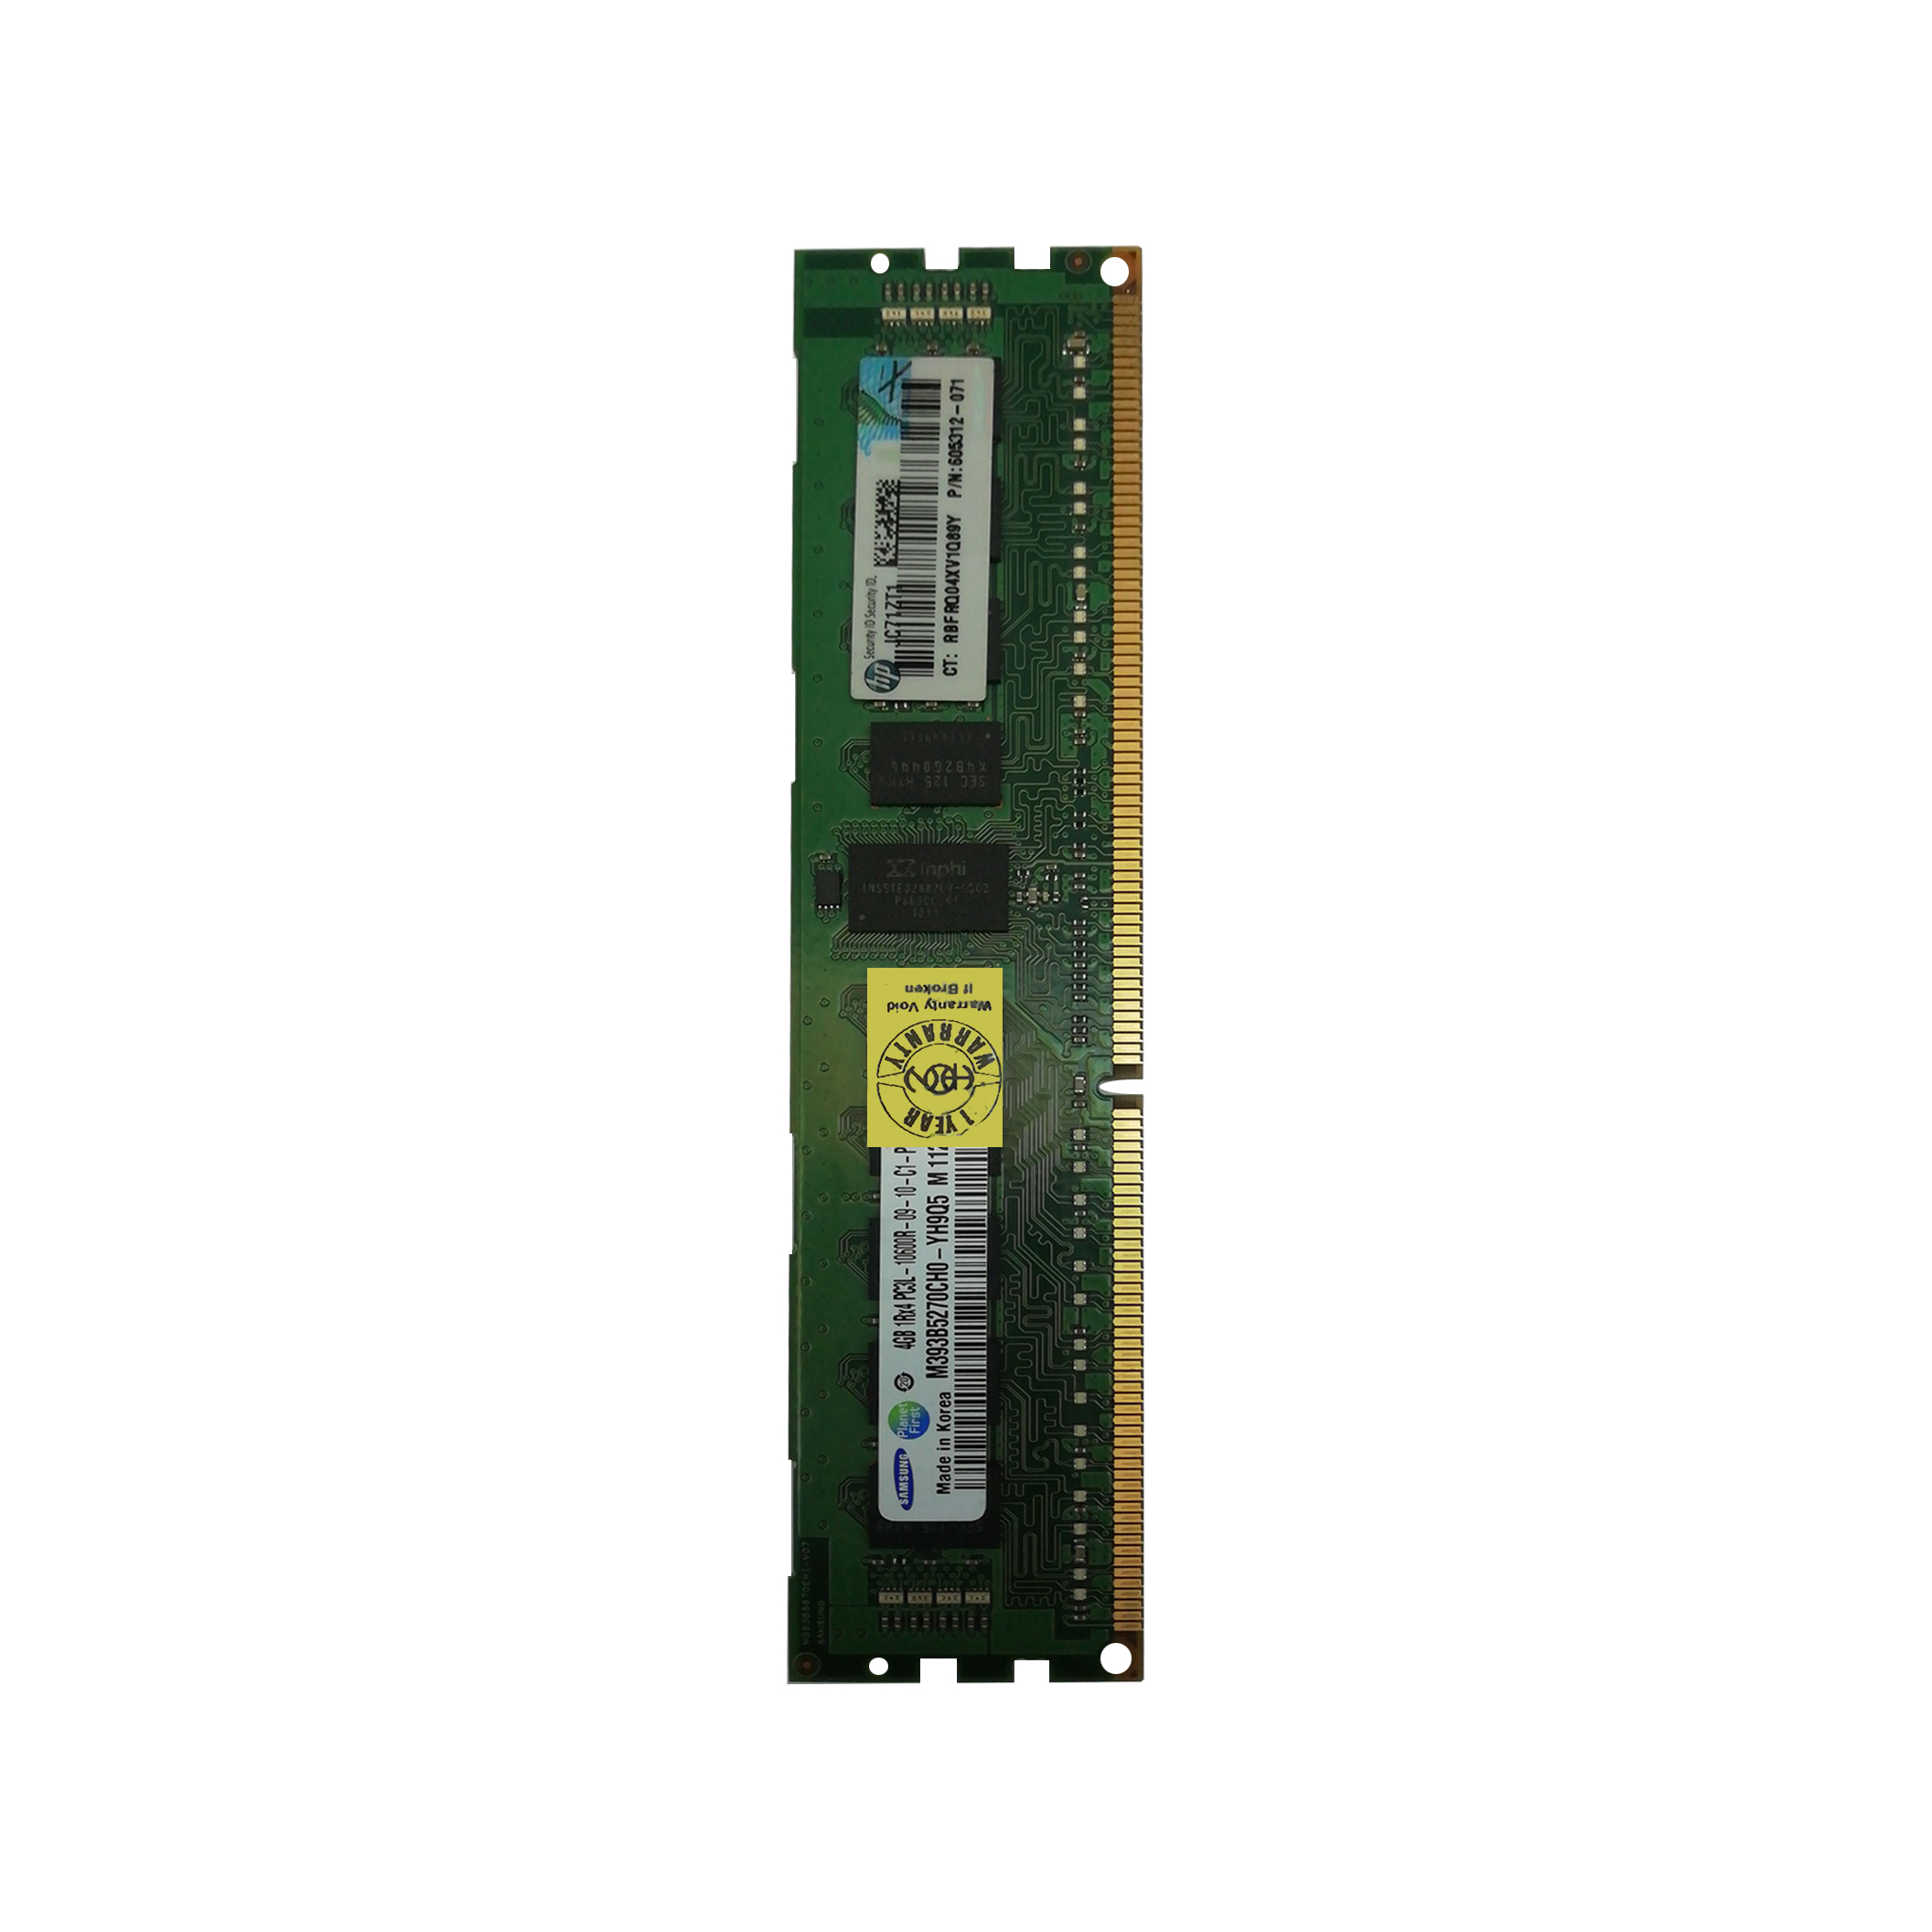 رم سرور DDR3 تک کاناله 1333 مگاهرتز PCL3 اچ پی مدل 071-605312 ظرفیت 4 گیگابایت